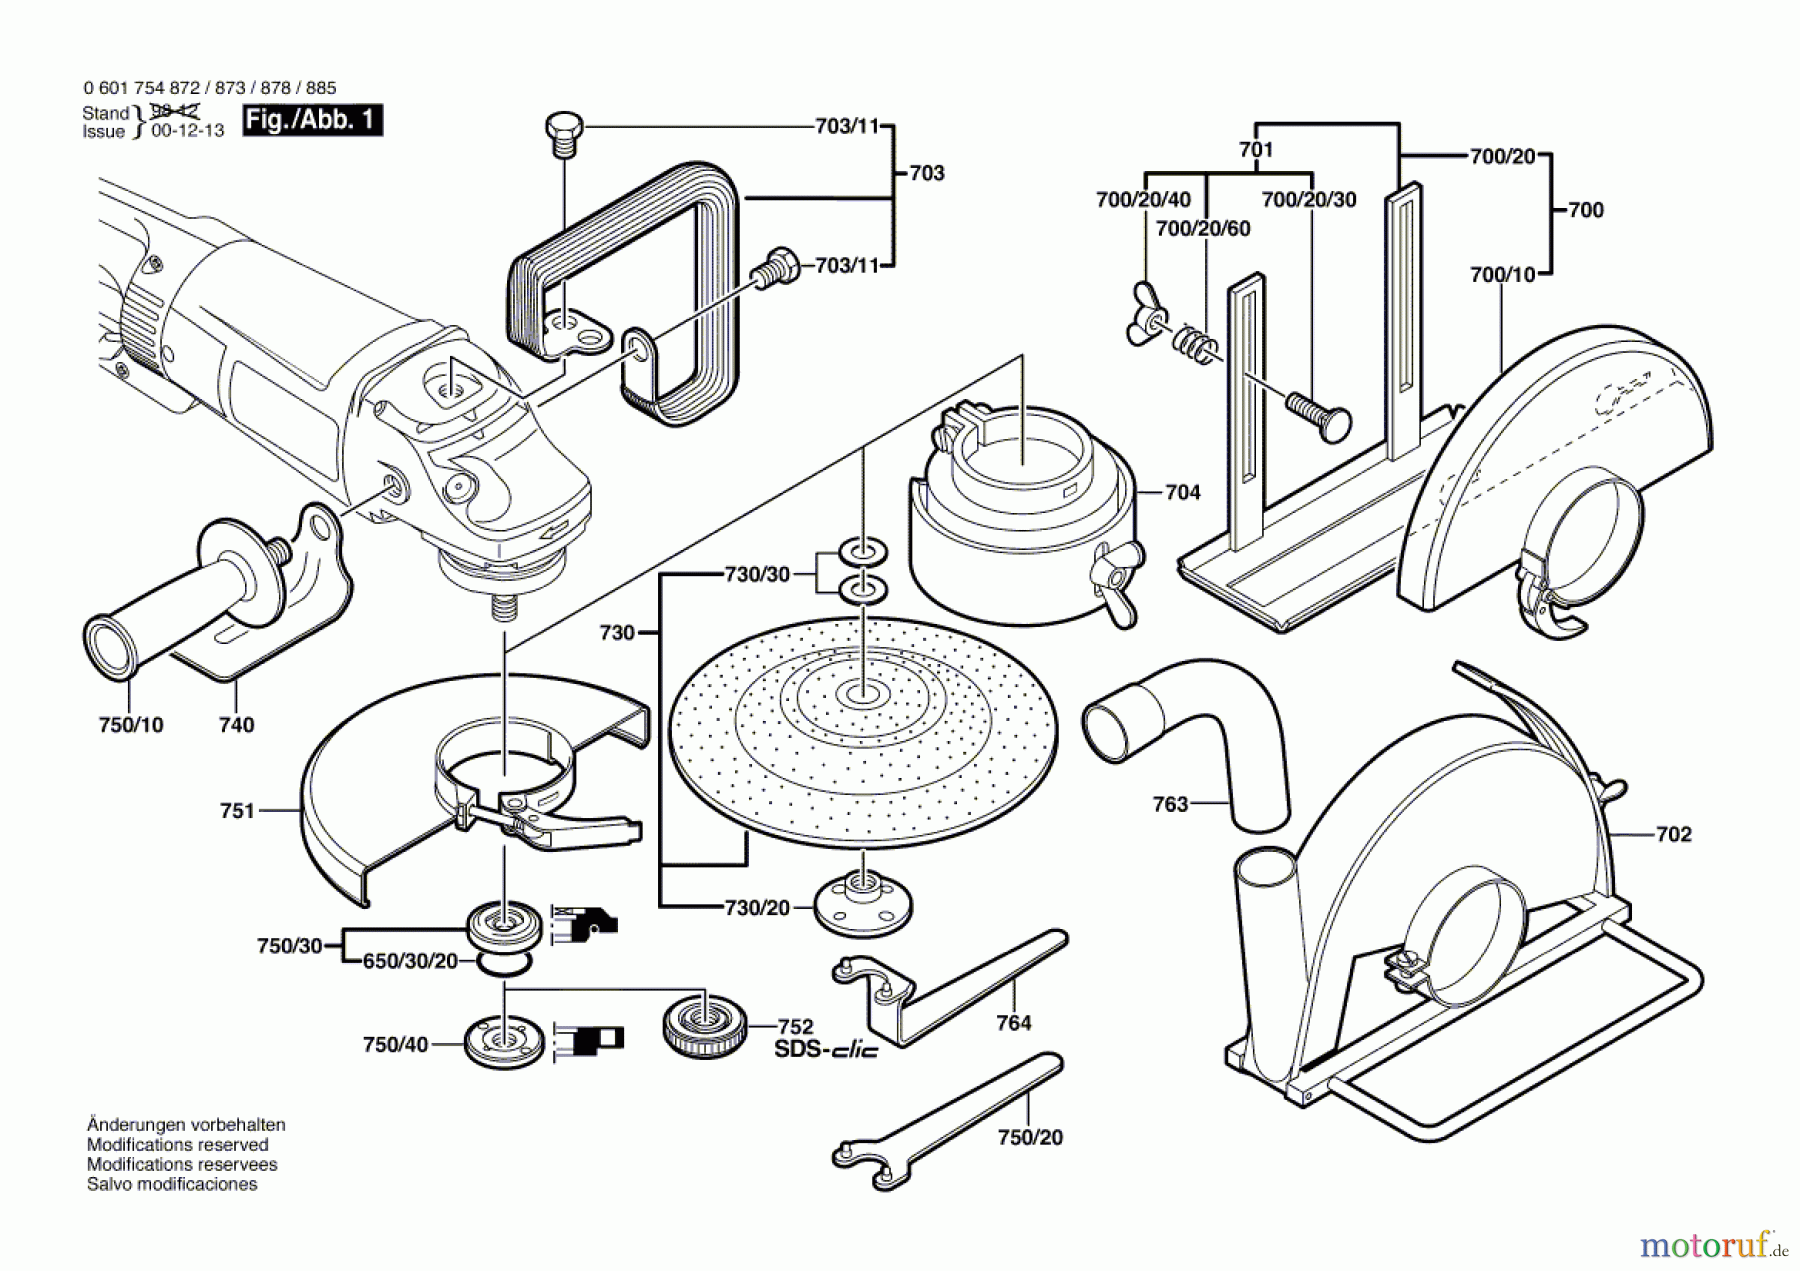  Bosch Werkzeug Winkelschleifer GWS 23-230 S Seite 2